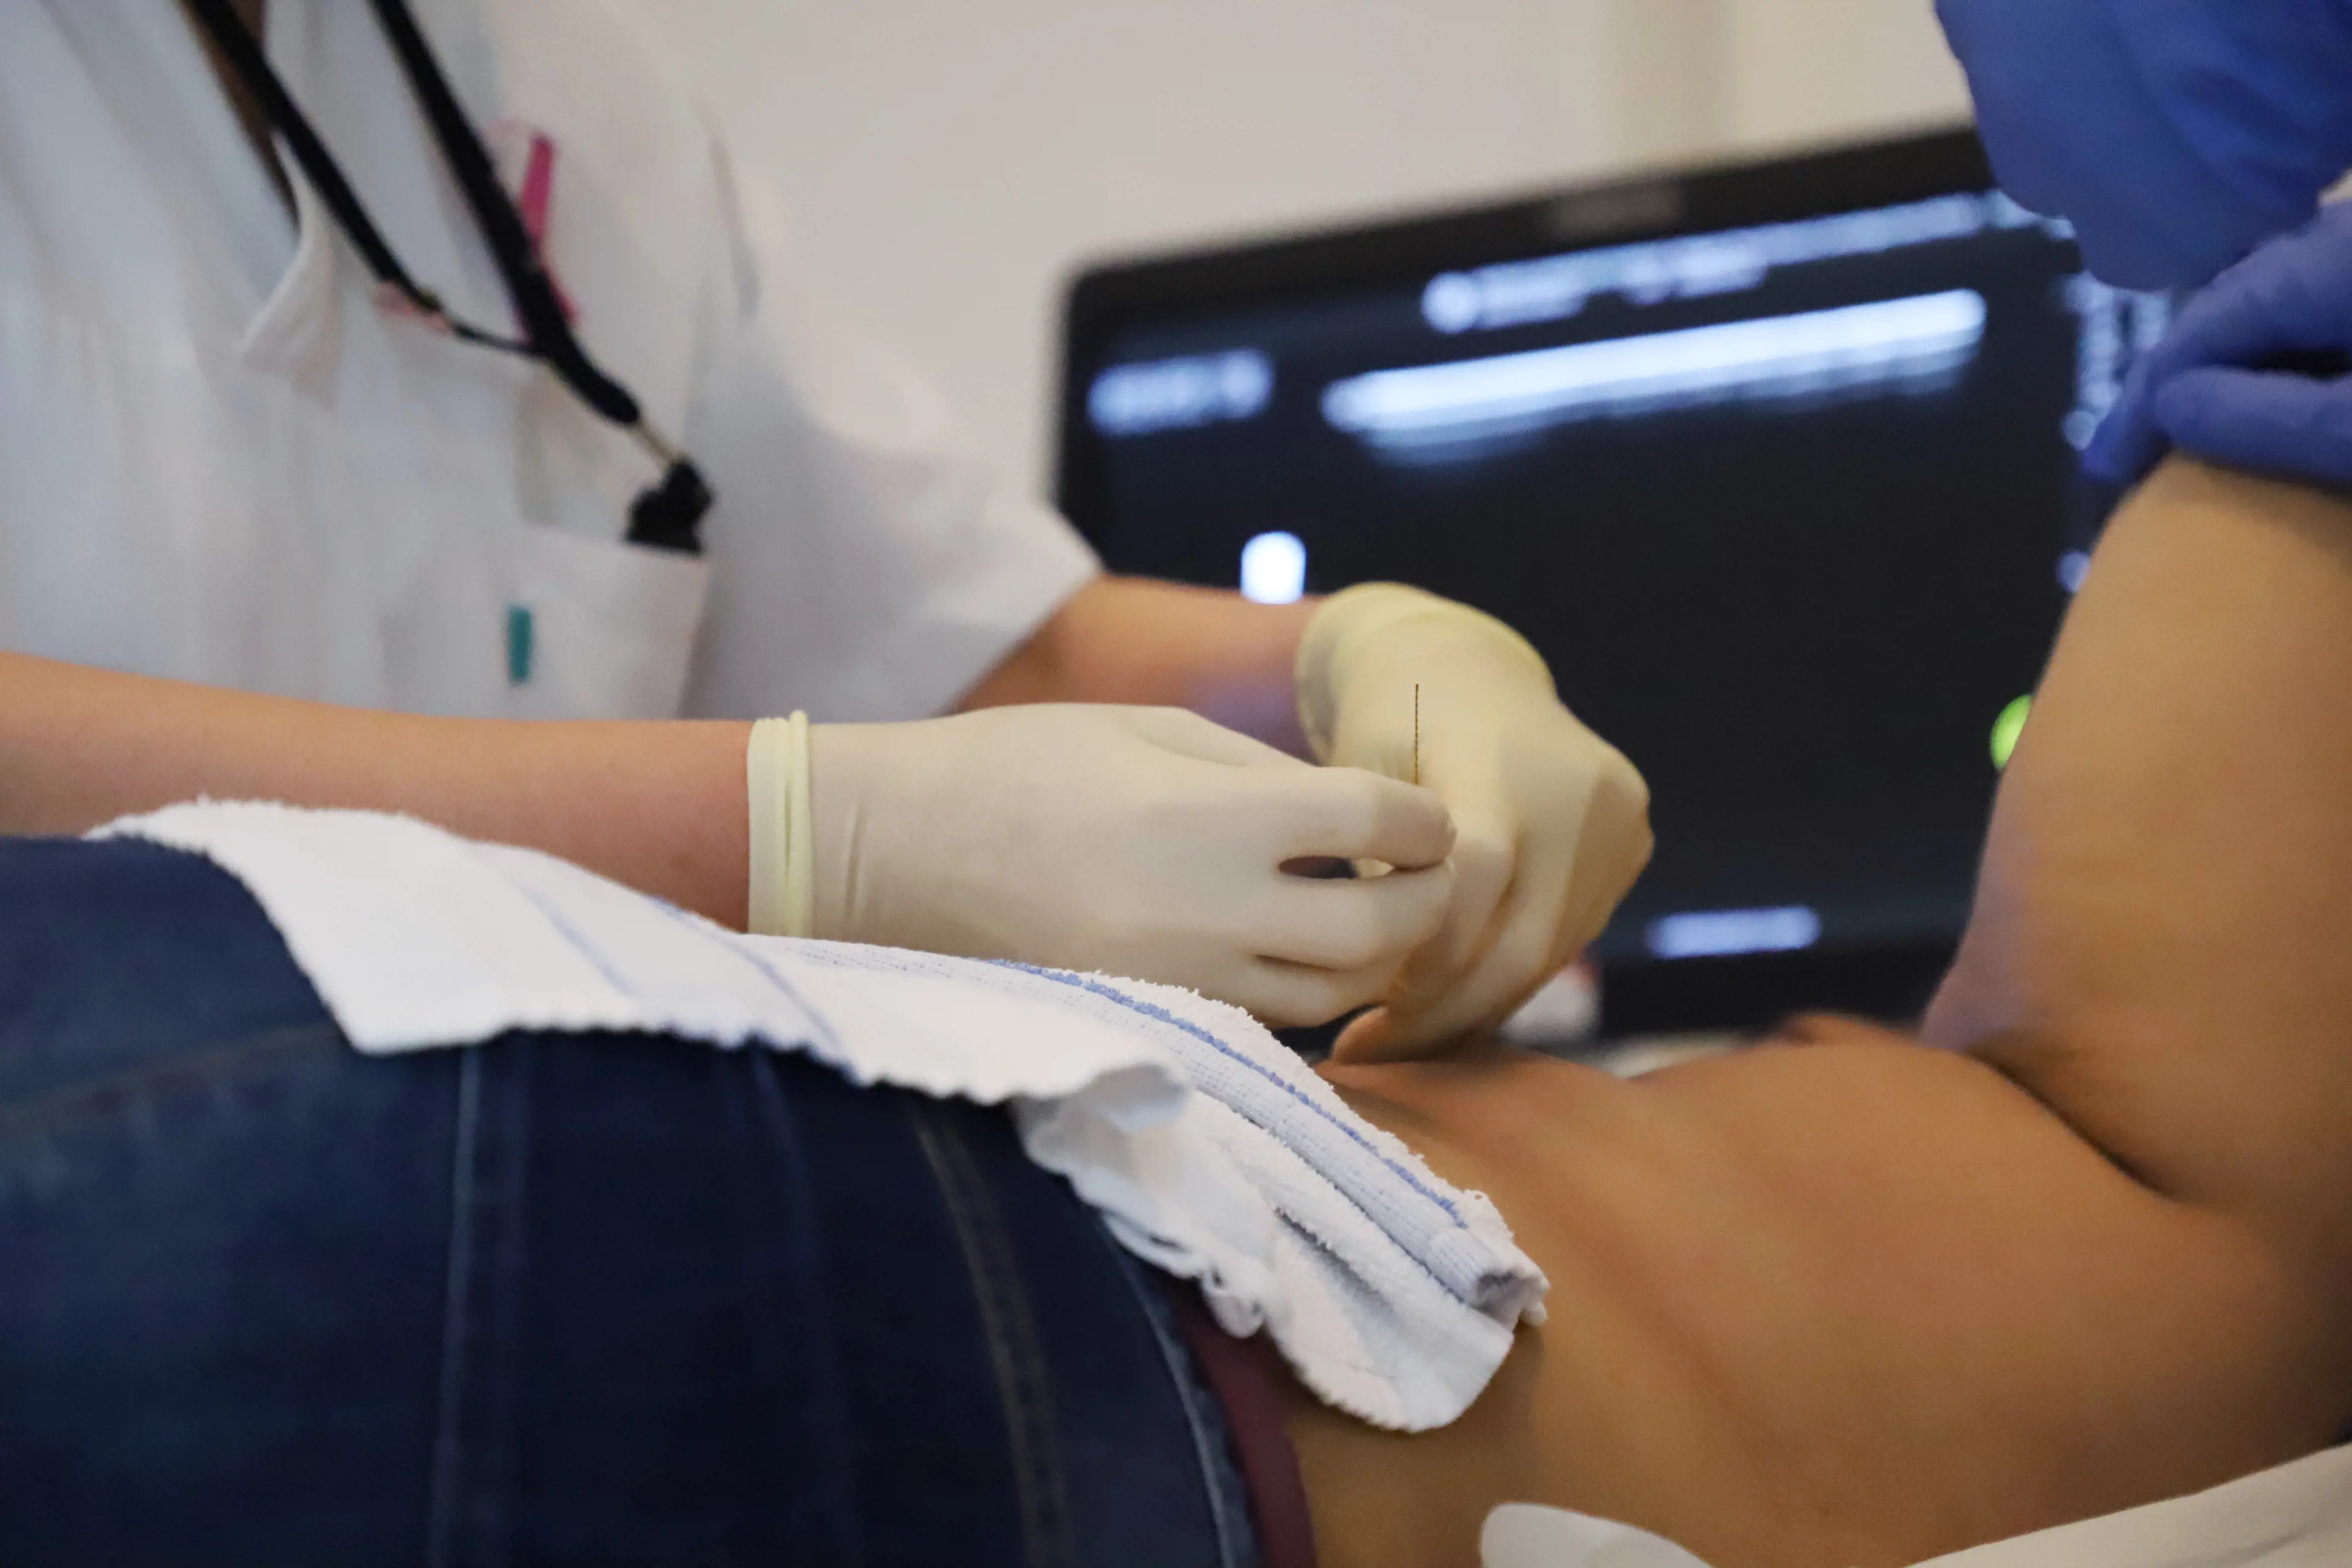 Radiolog plasserer en brystmarkør i en pasient ved hjelp av en liten nål.